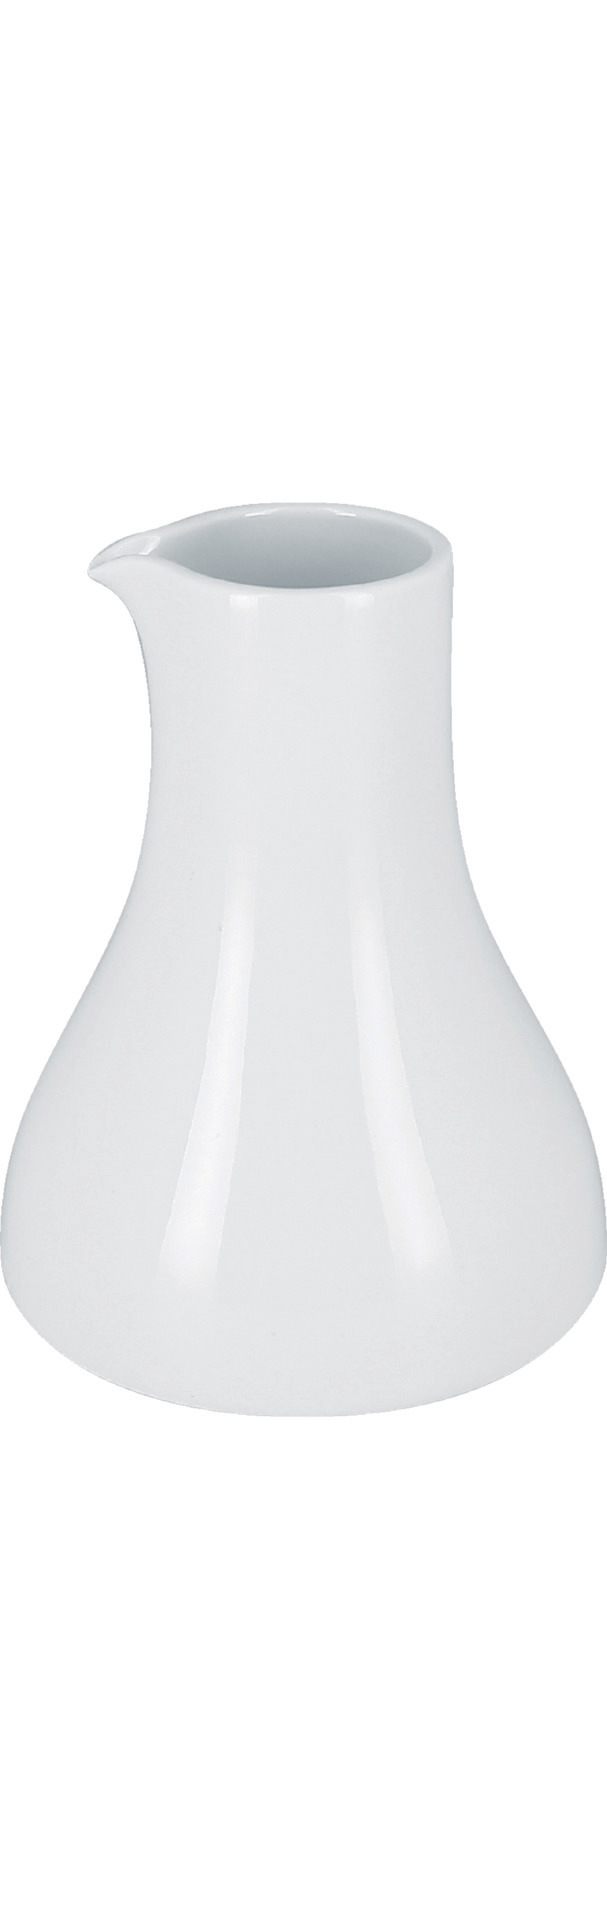 Milchkännchen 0,15 l plain-white